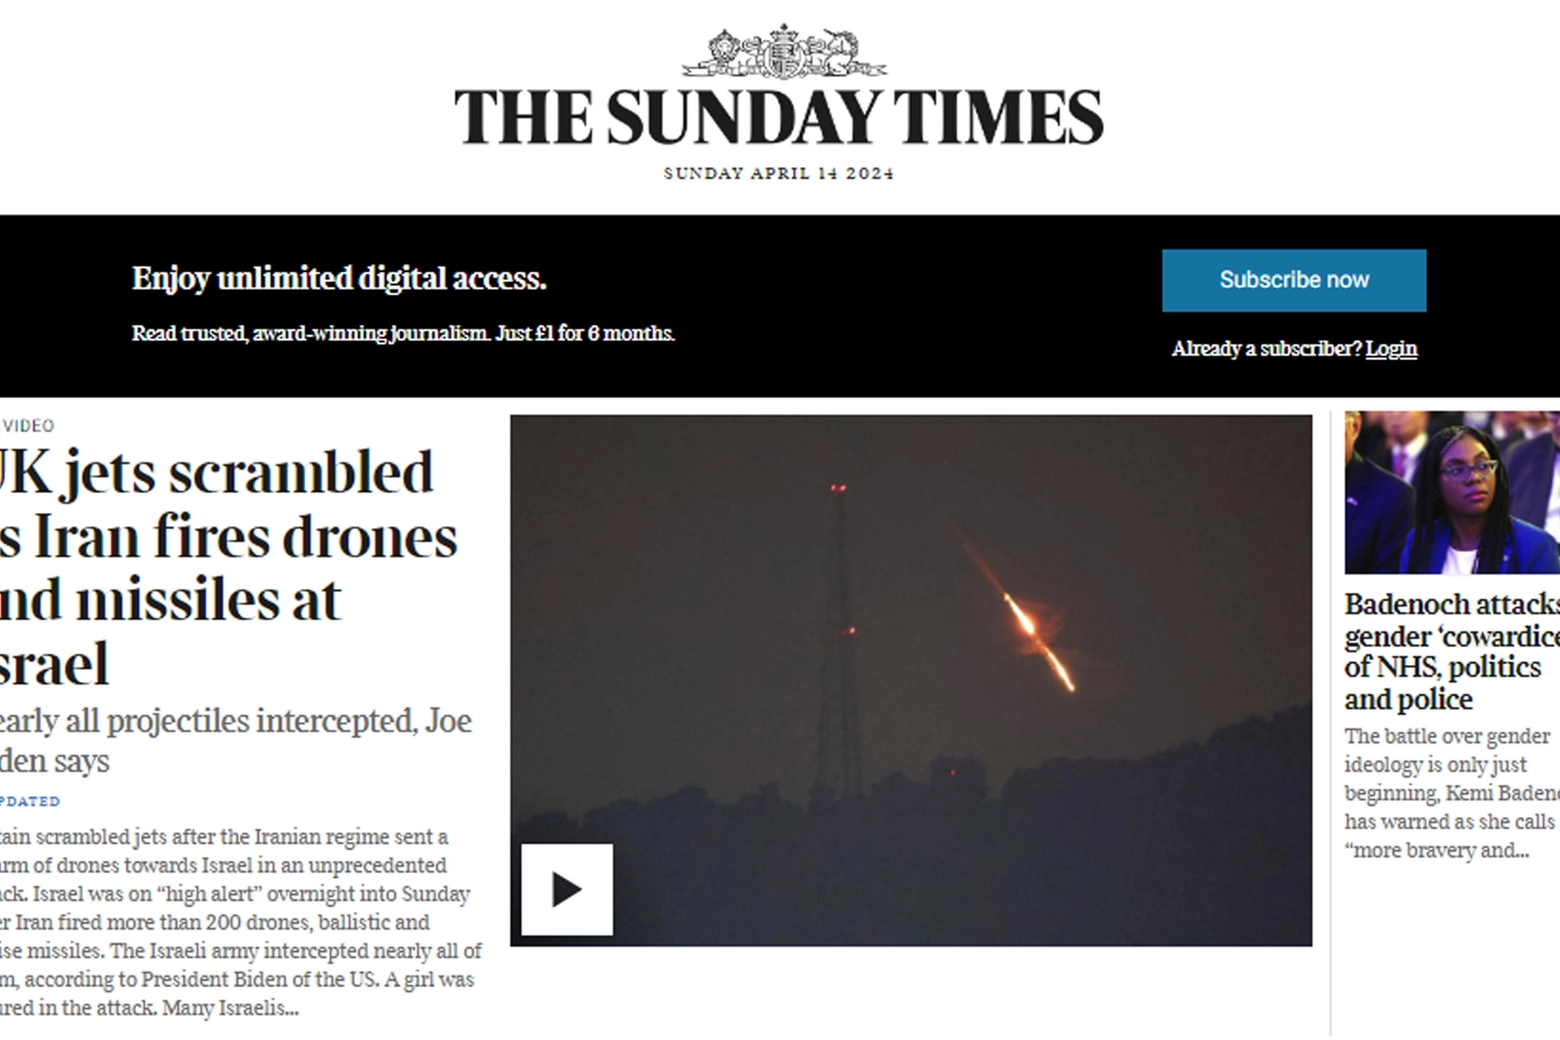 Sunday Times: "Jet britannici decollano mentre l'Iran spara missili e droni contro Israele"